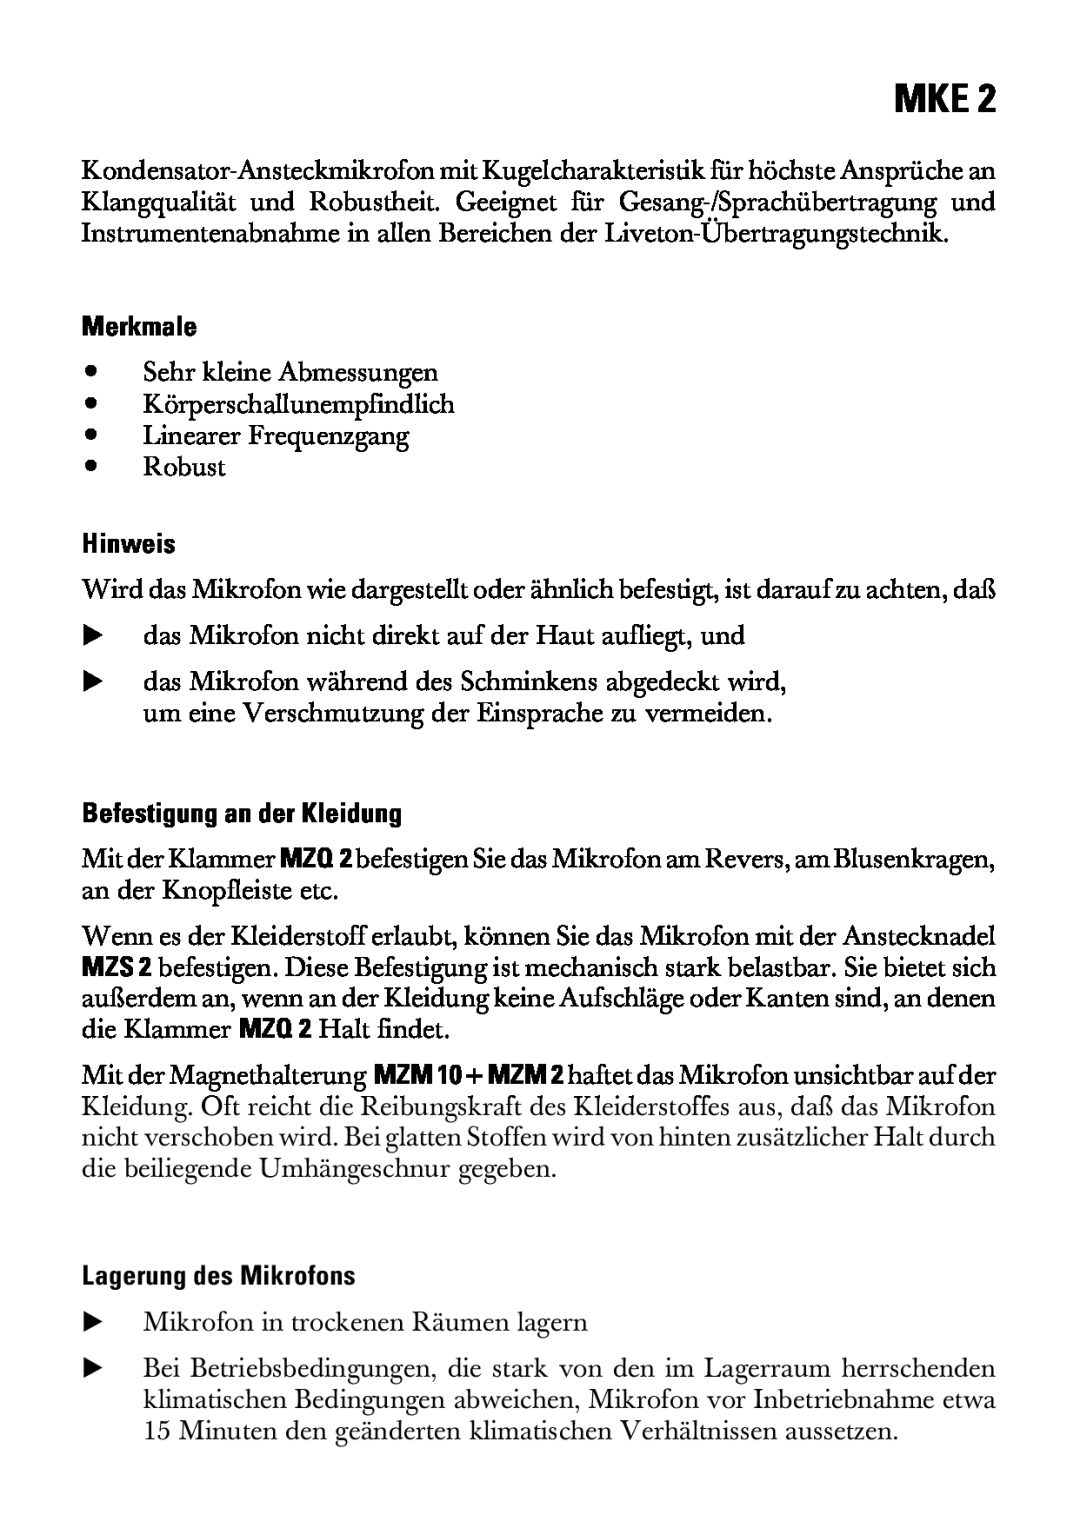 Sennheiser MKE 2 manual Merkmale, Hinweis, Befestigung an der Kleidung, Lagerung des Mikrofons 